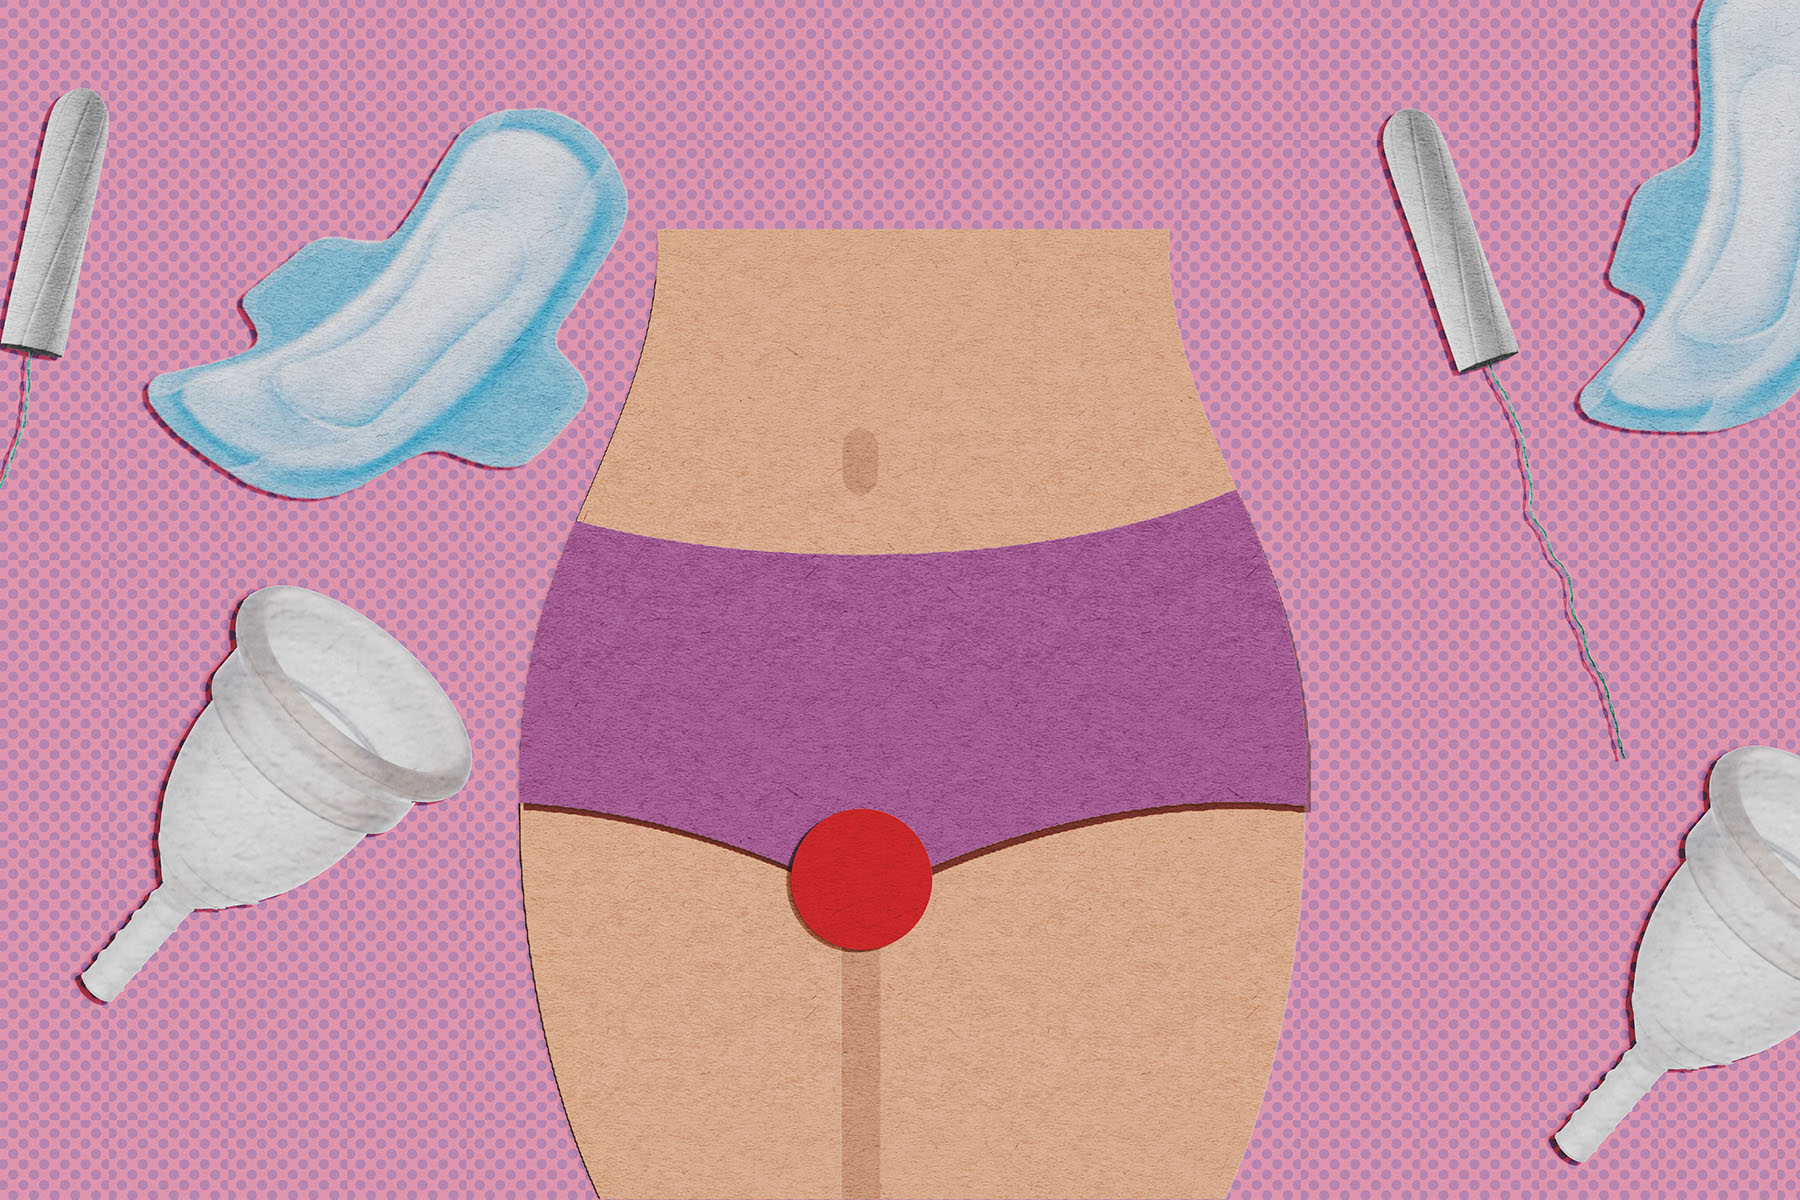 Un projet de loi californien vise à inclure la santé menstruelle dans l’éducation sexuelle à l’école